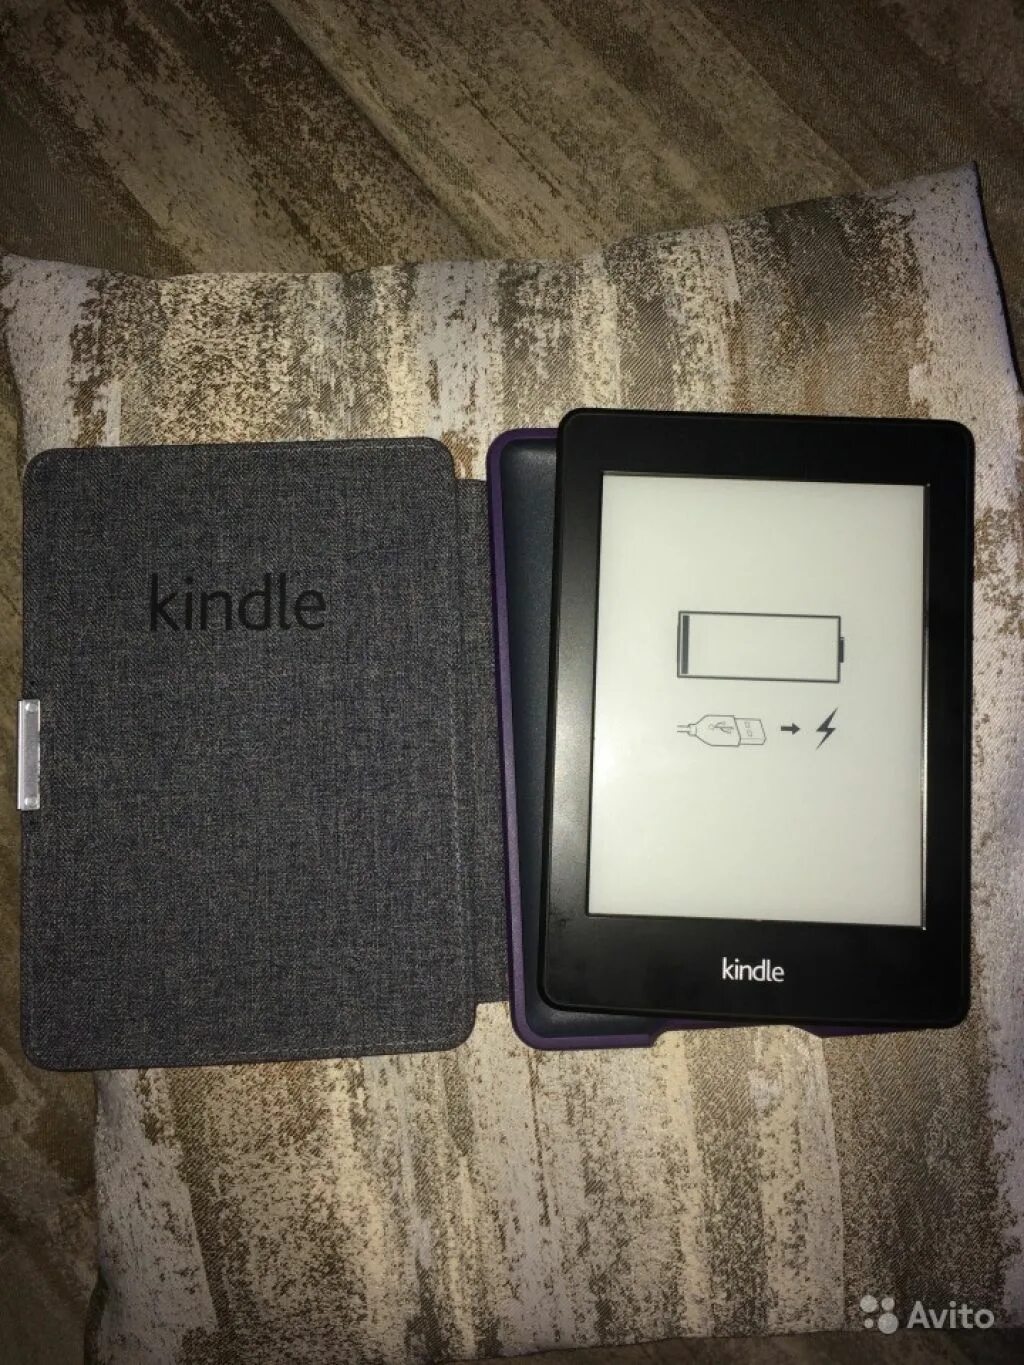 Электронная книга Amazon Kindle. Kindle dp75sdi. Kindle dp75sdi Форматы. Киндл 5 электронная книга.